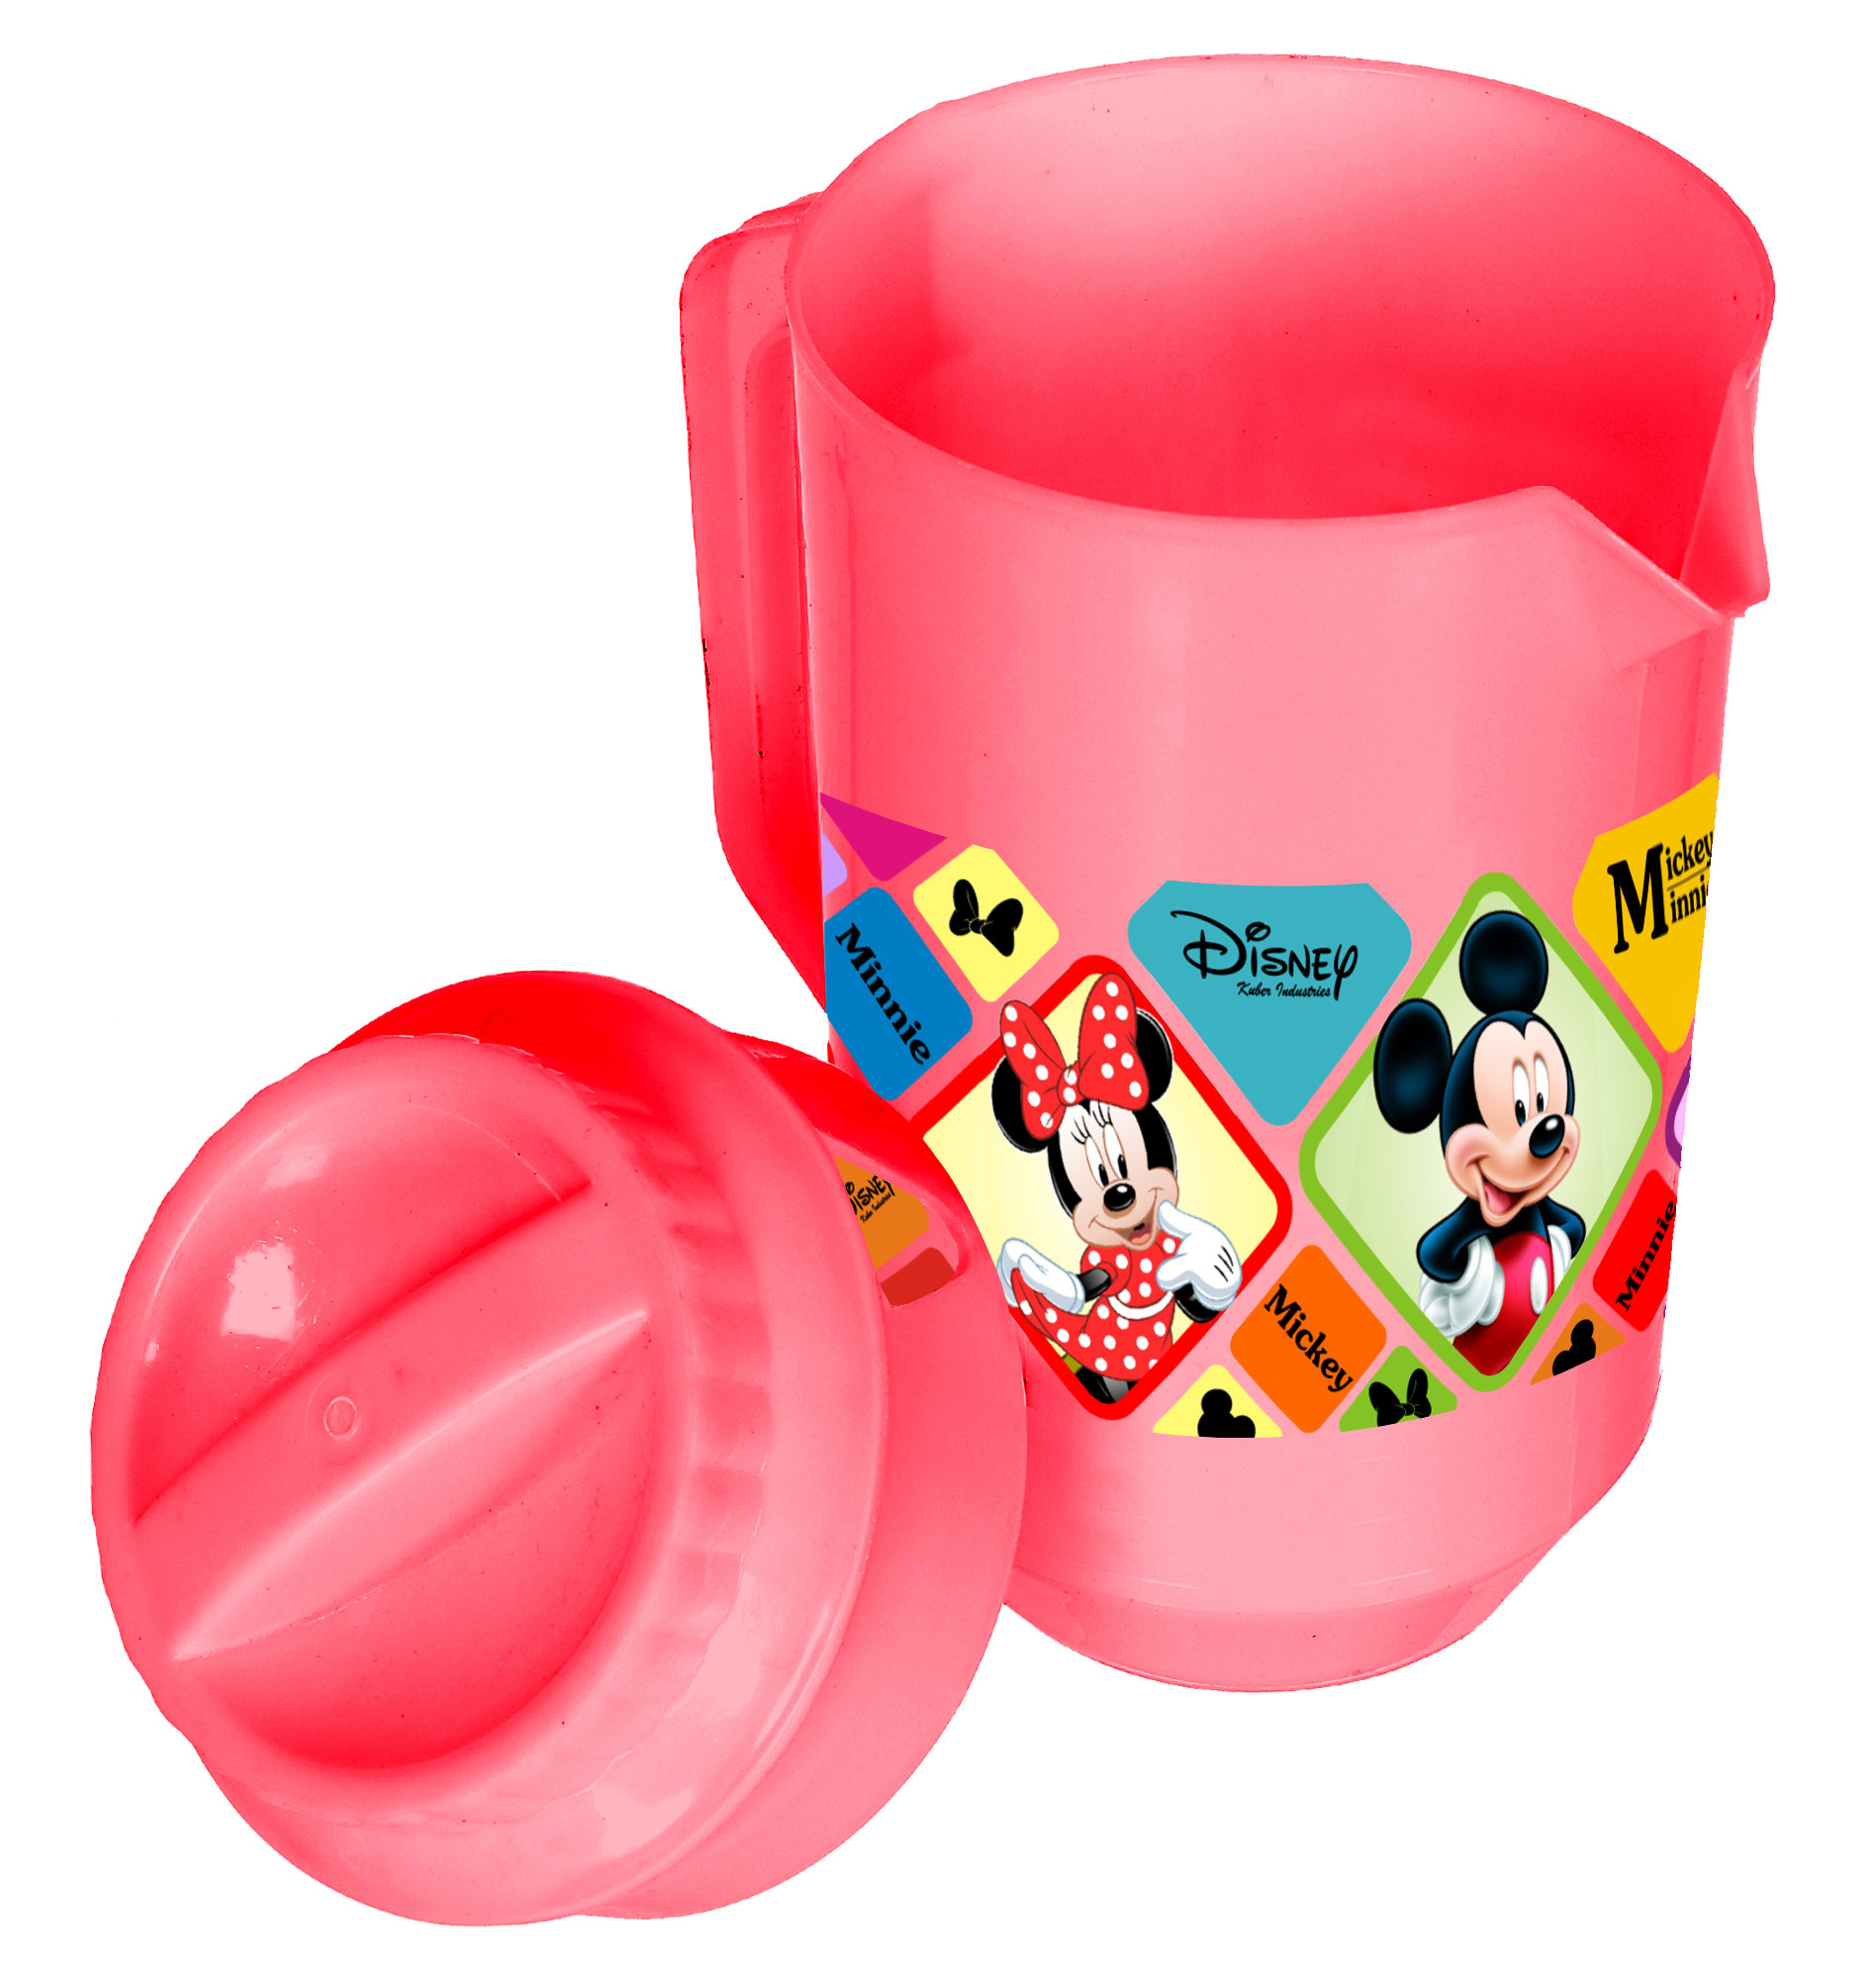 Kuber Industries Disney Mickey Minnie Print Unbreakable Multipurpose Plastic Water & Juice Jug With Lid,2 Ltr (Set Of 2, Pink & Black)